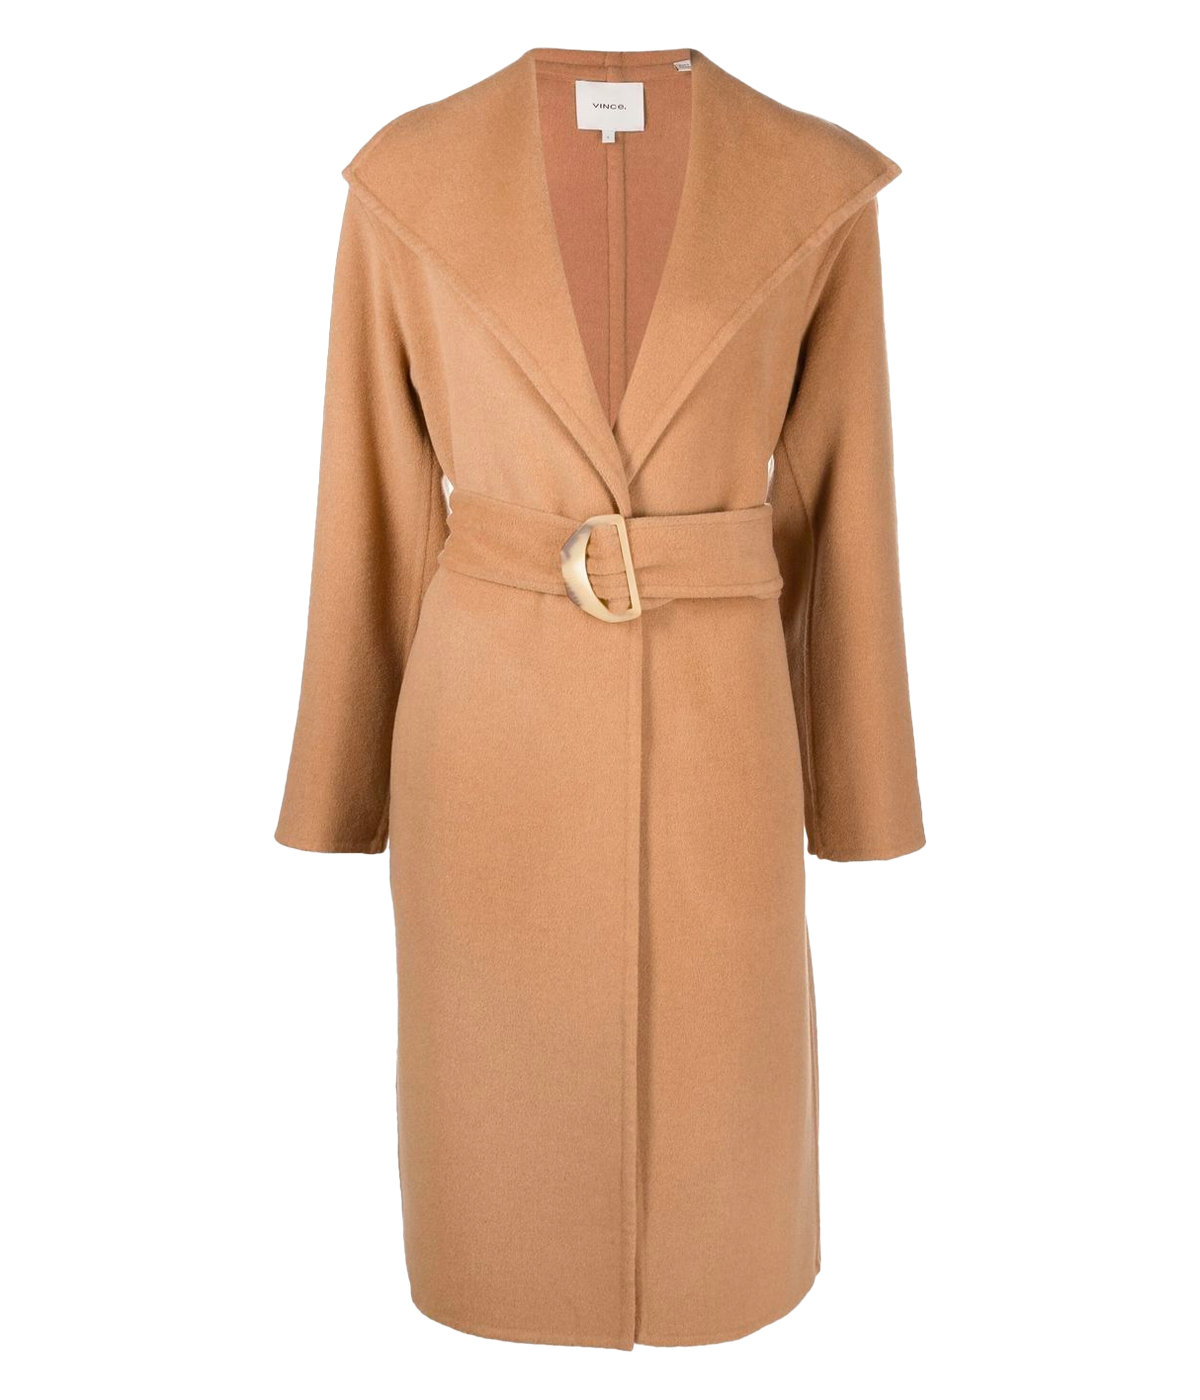 Belted Drape Coat in Almond